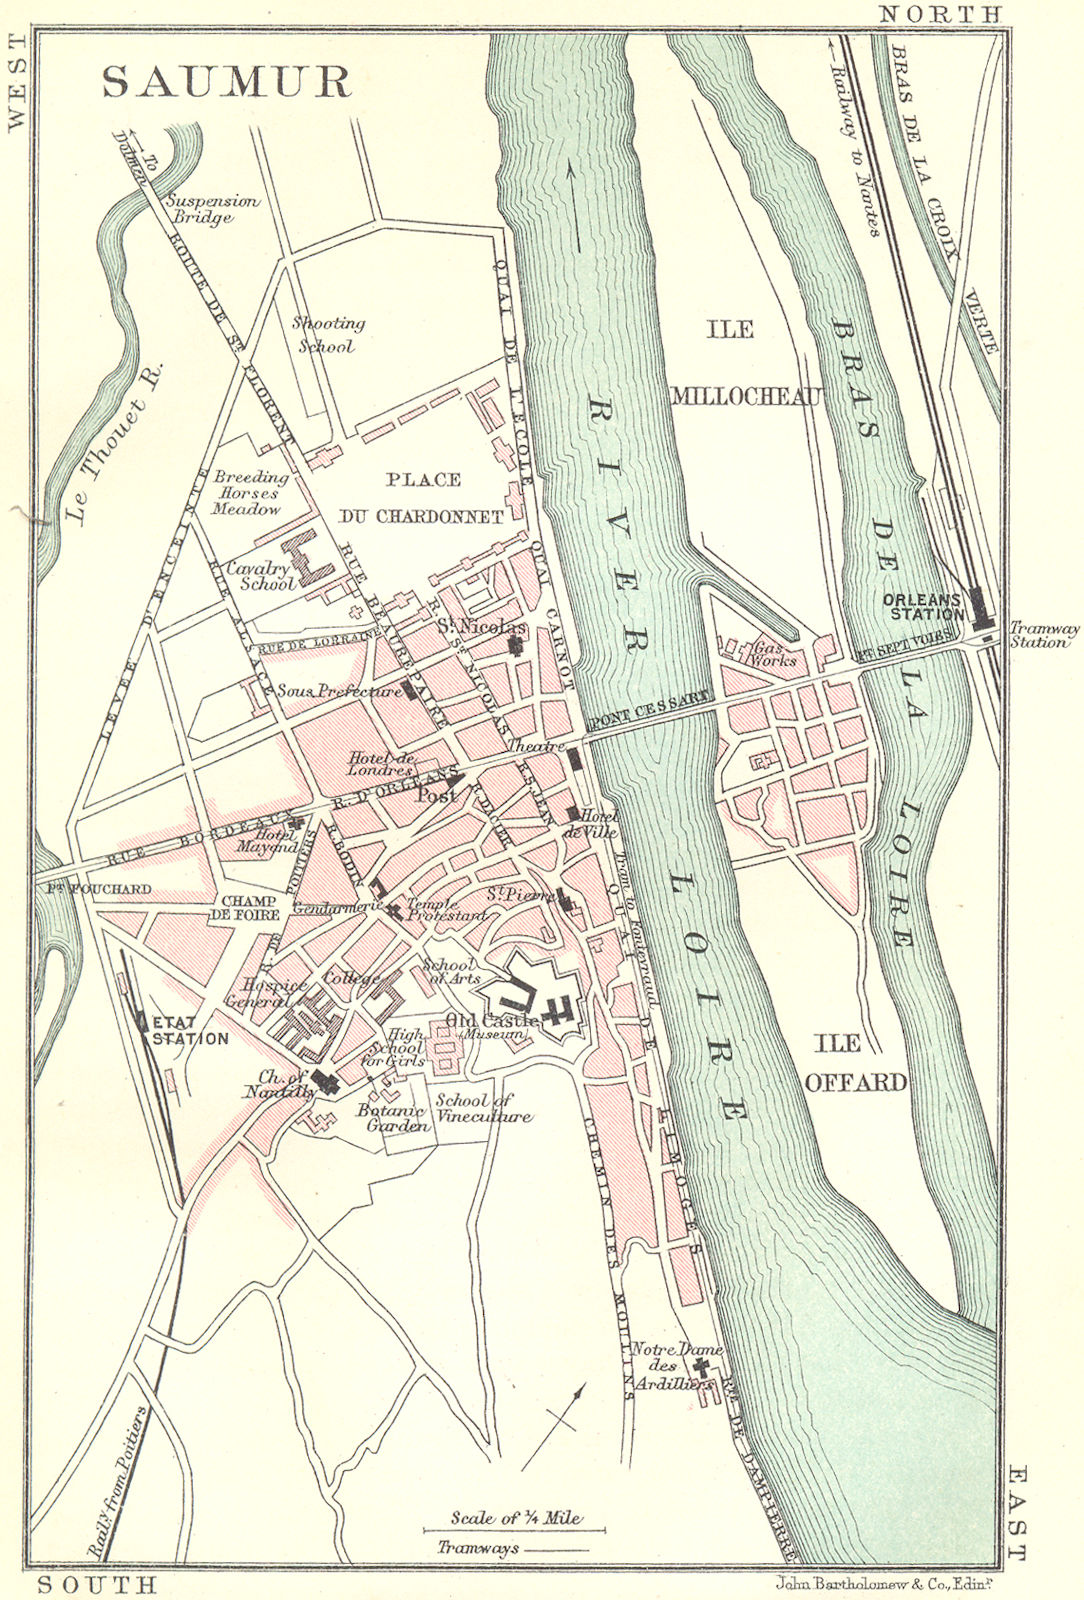 Associate Product SAUMUR town/city plan de la ville. Maine-et-Loire 1914 old antique map chart